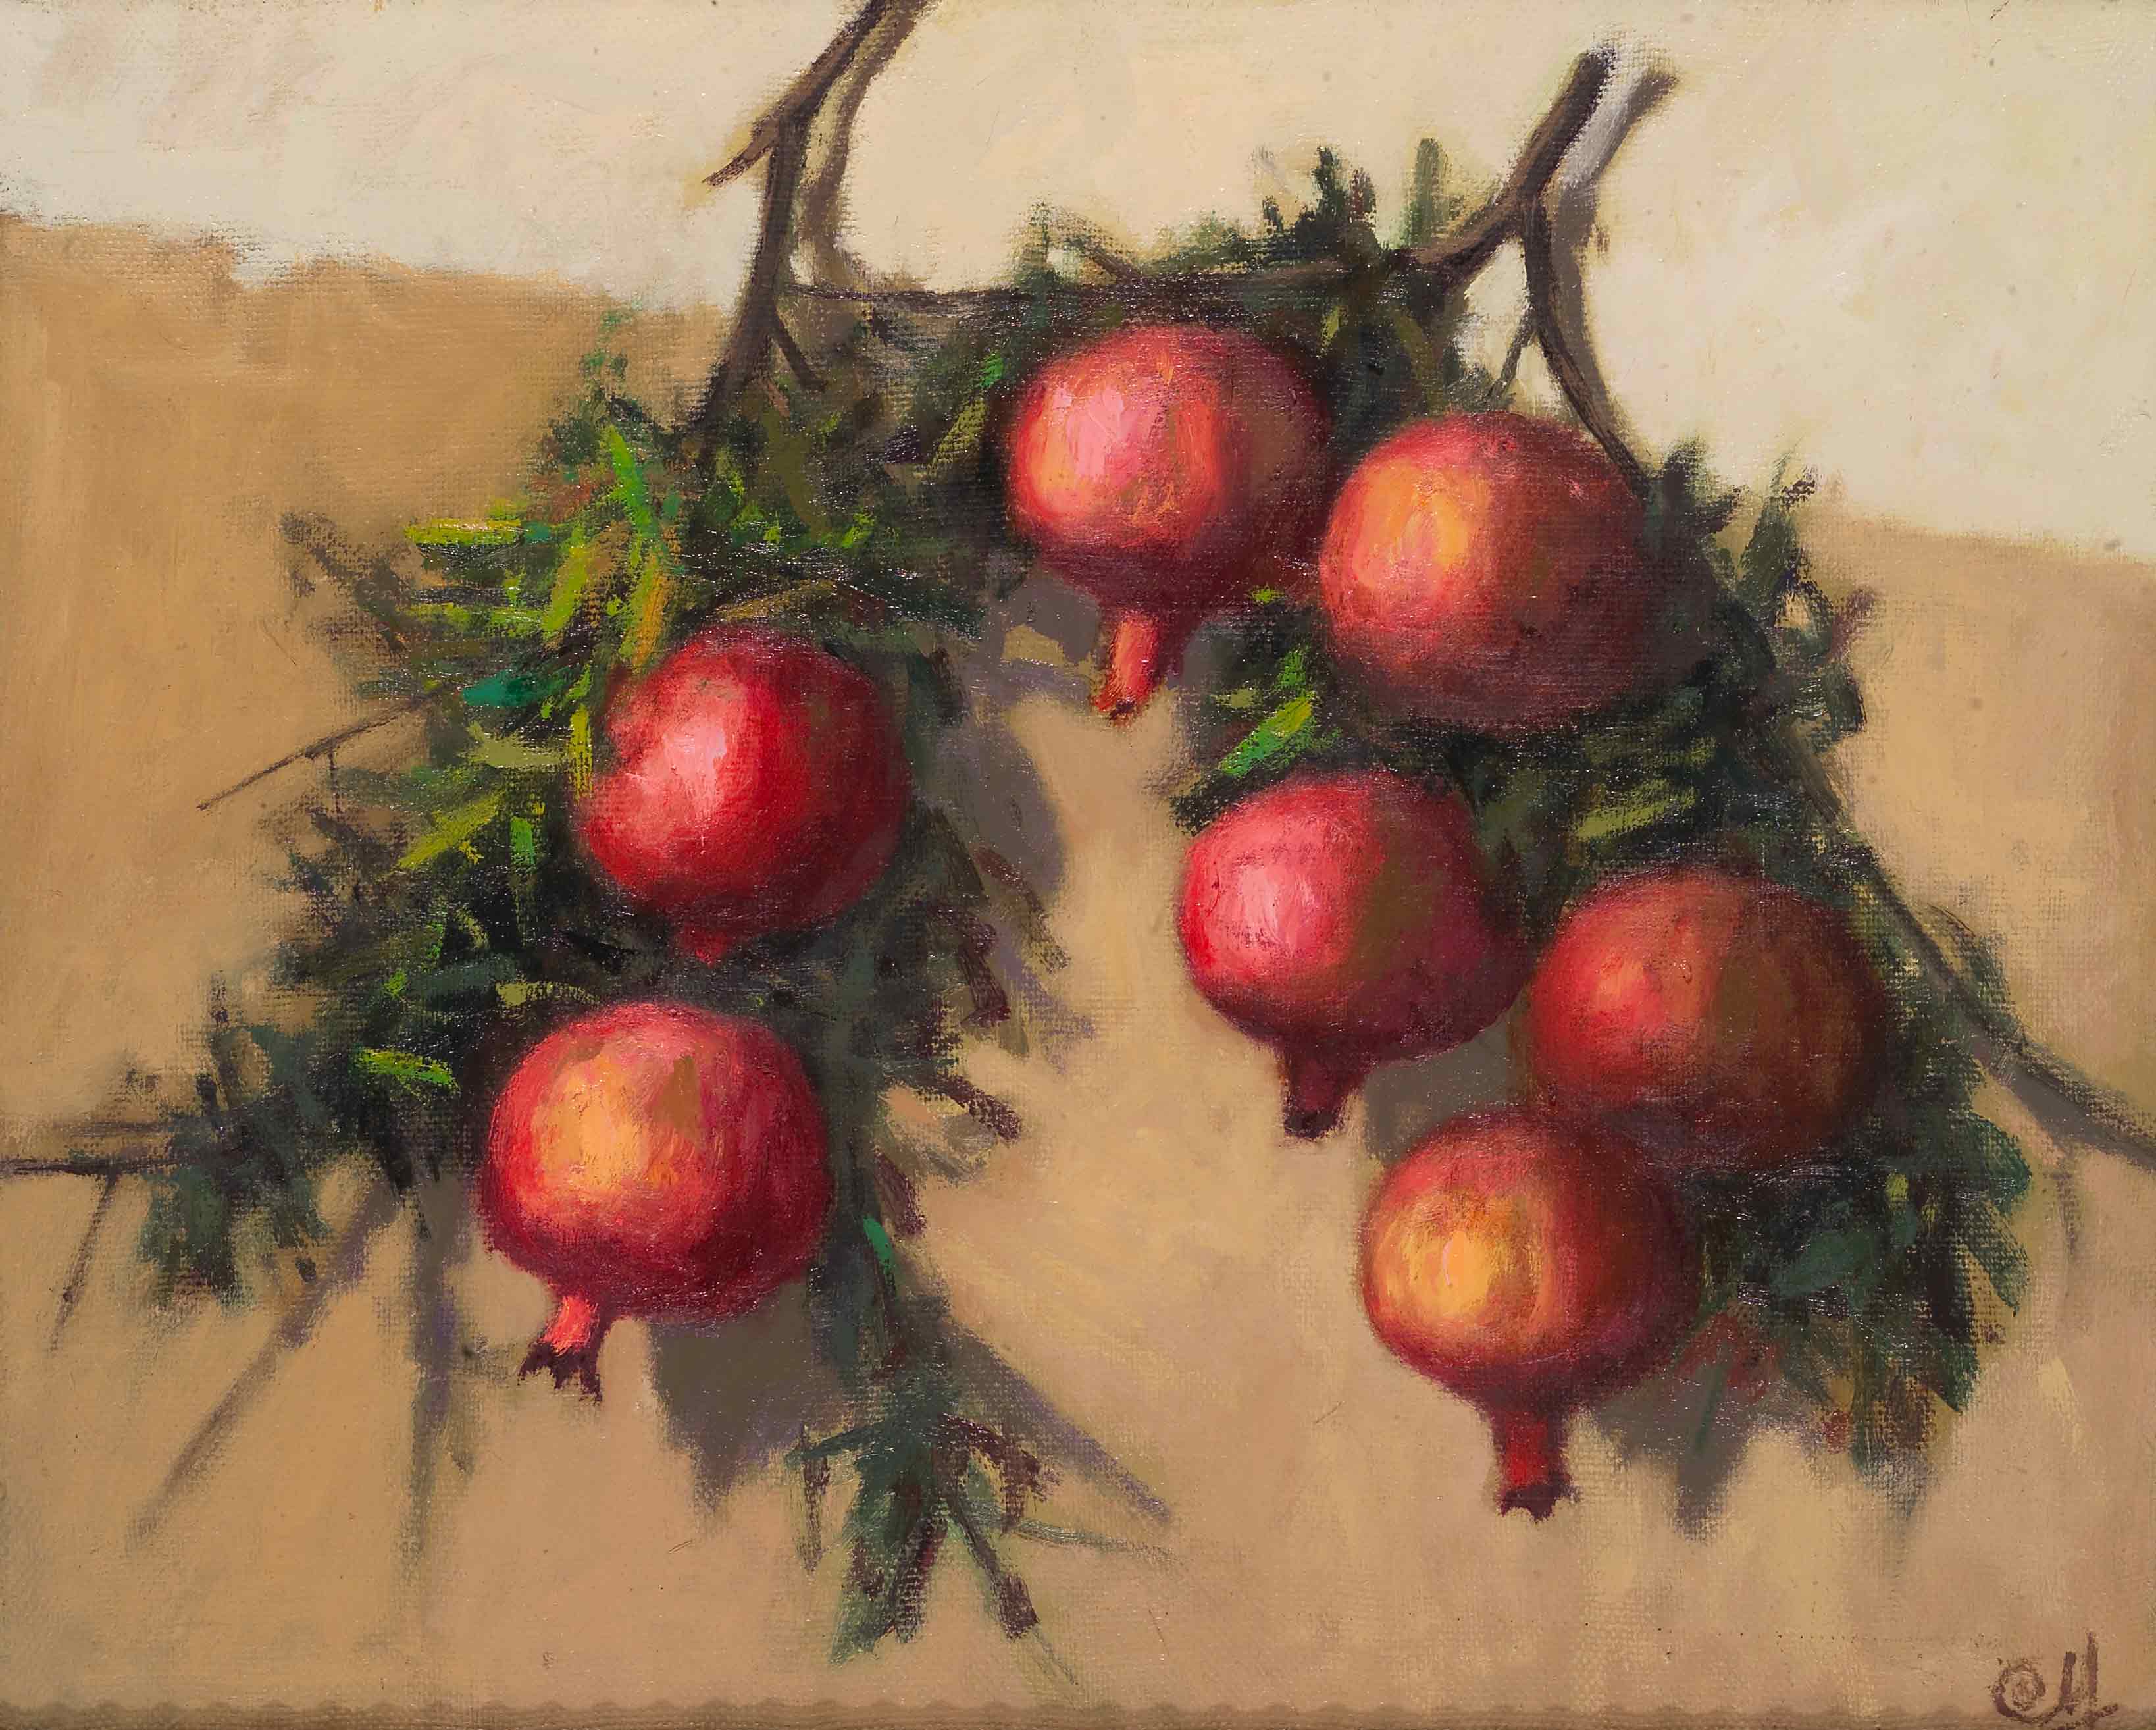 Pomegranate sprig